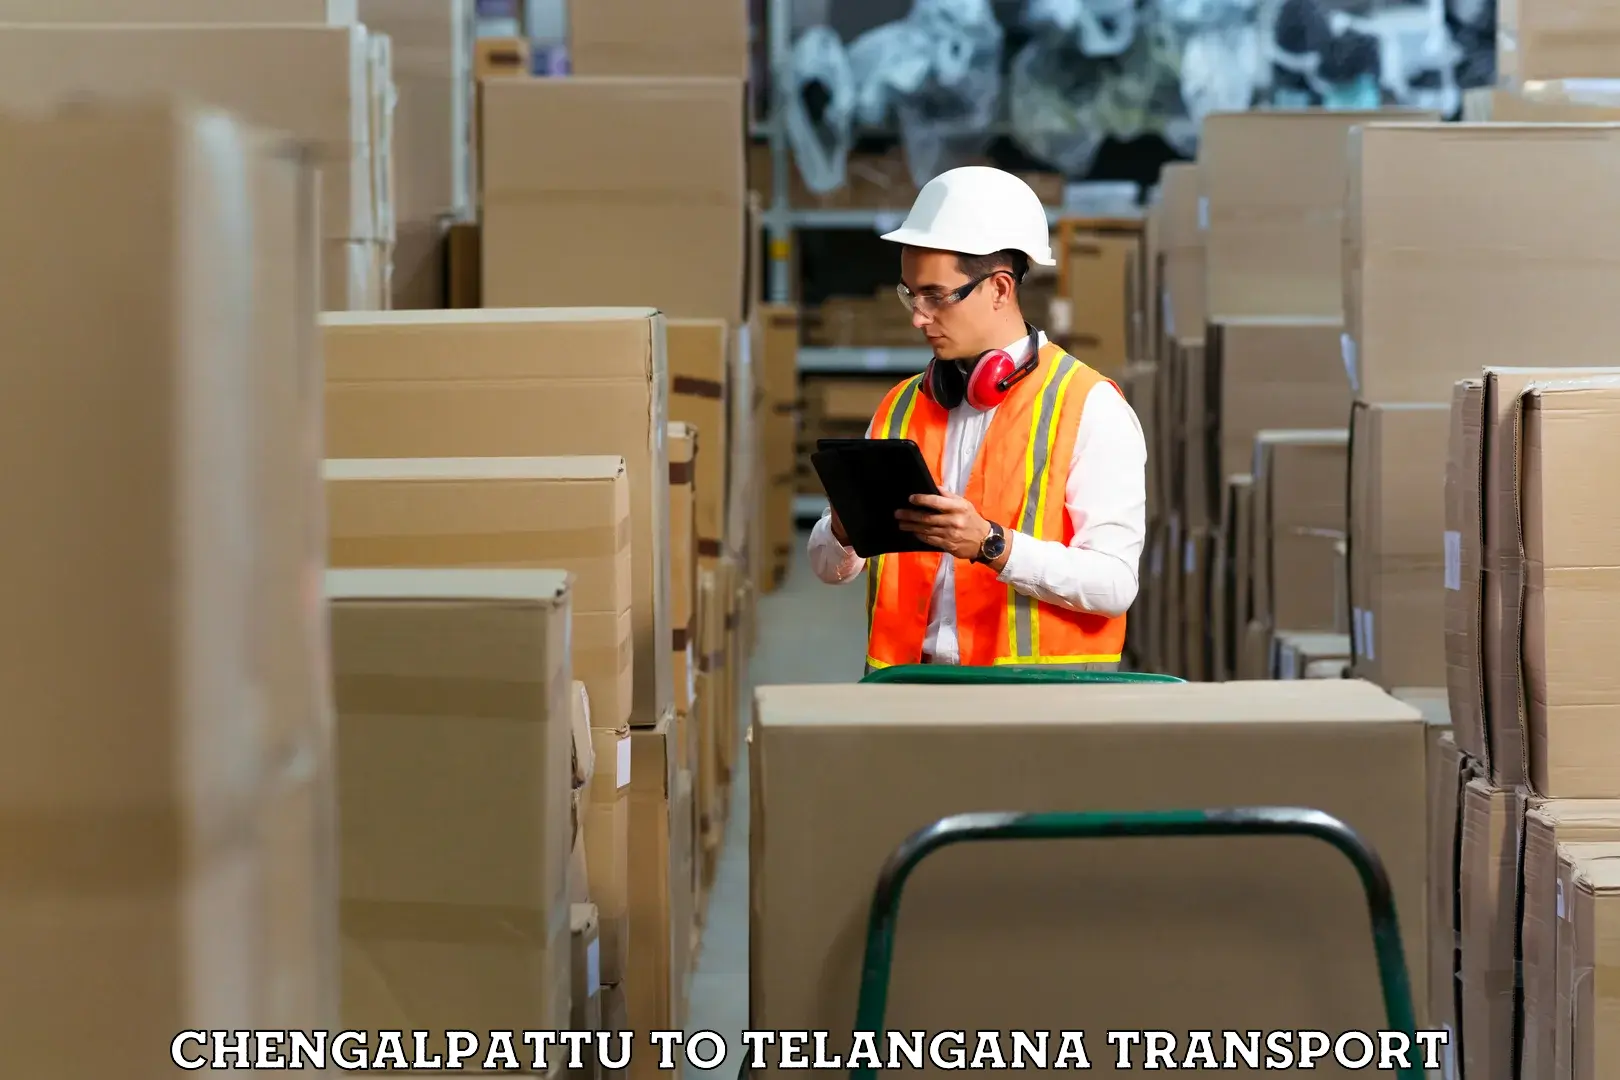 Truck transport companies in India Chengalpattu to Mahabub Nagar